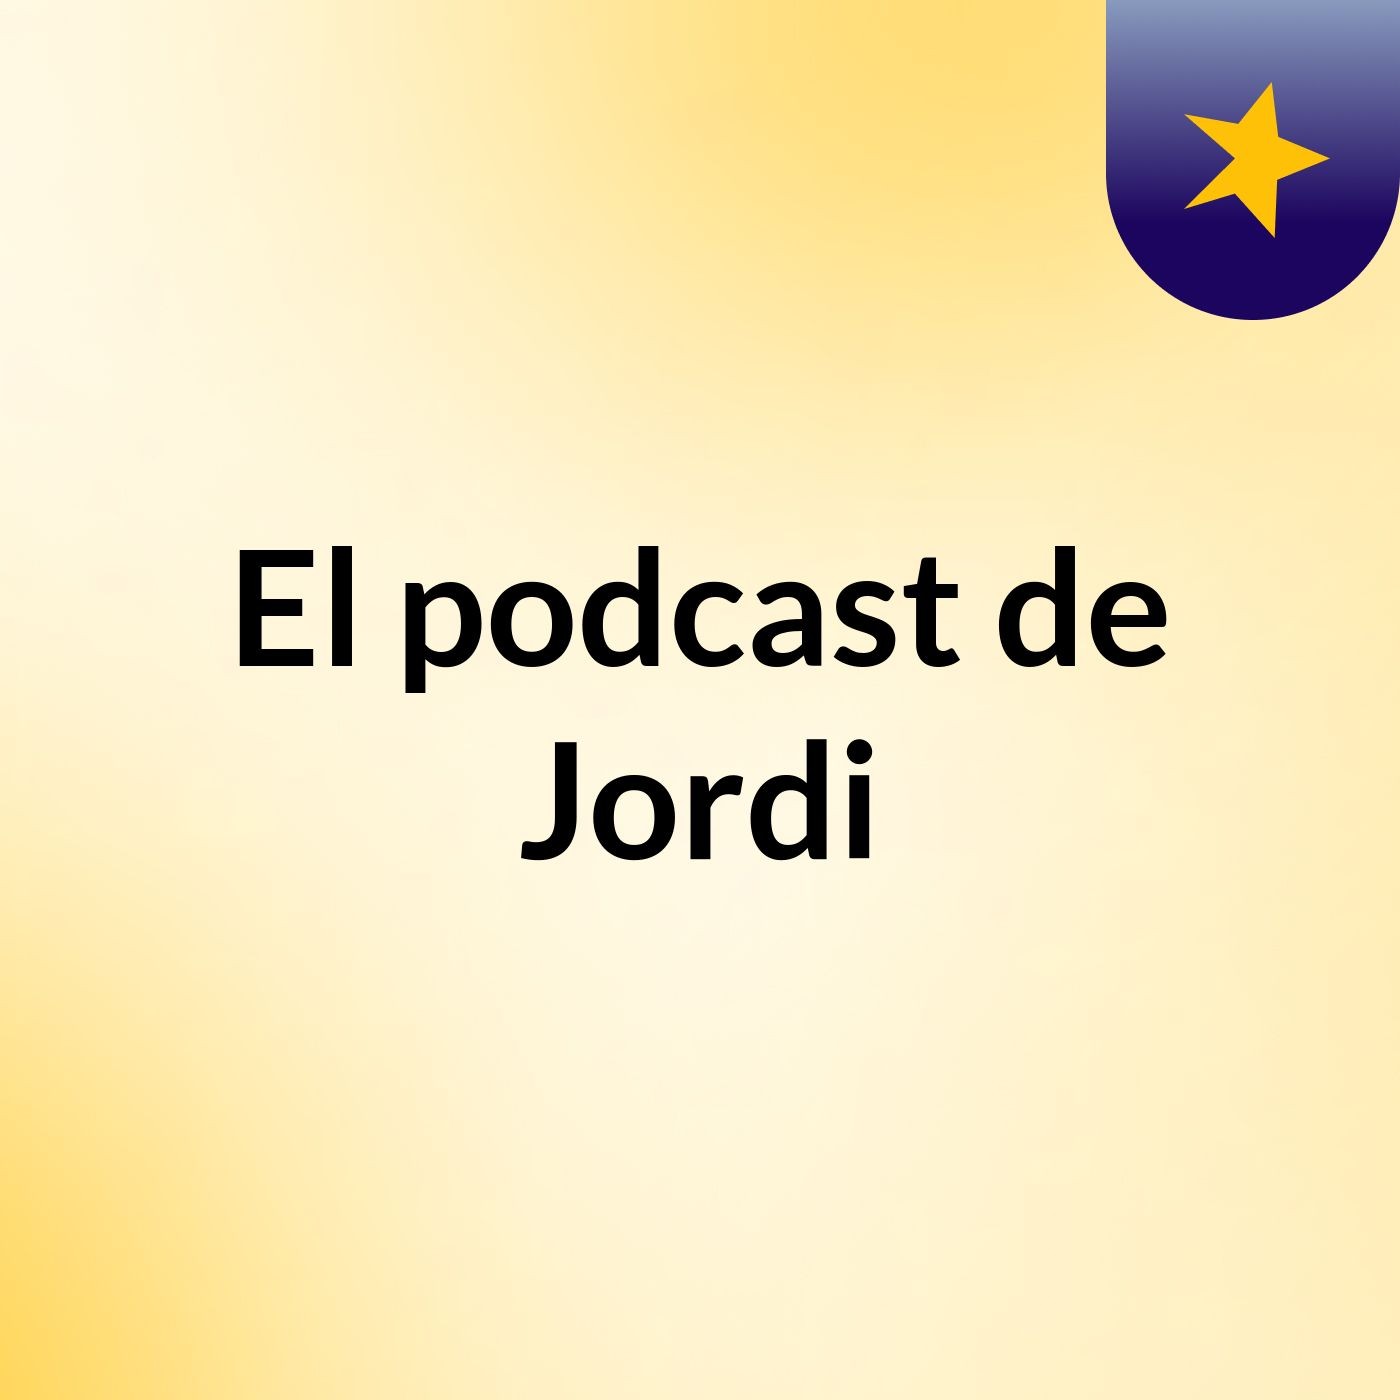 Episodio 5 - El podcast de Jordi